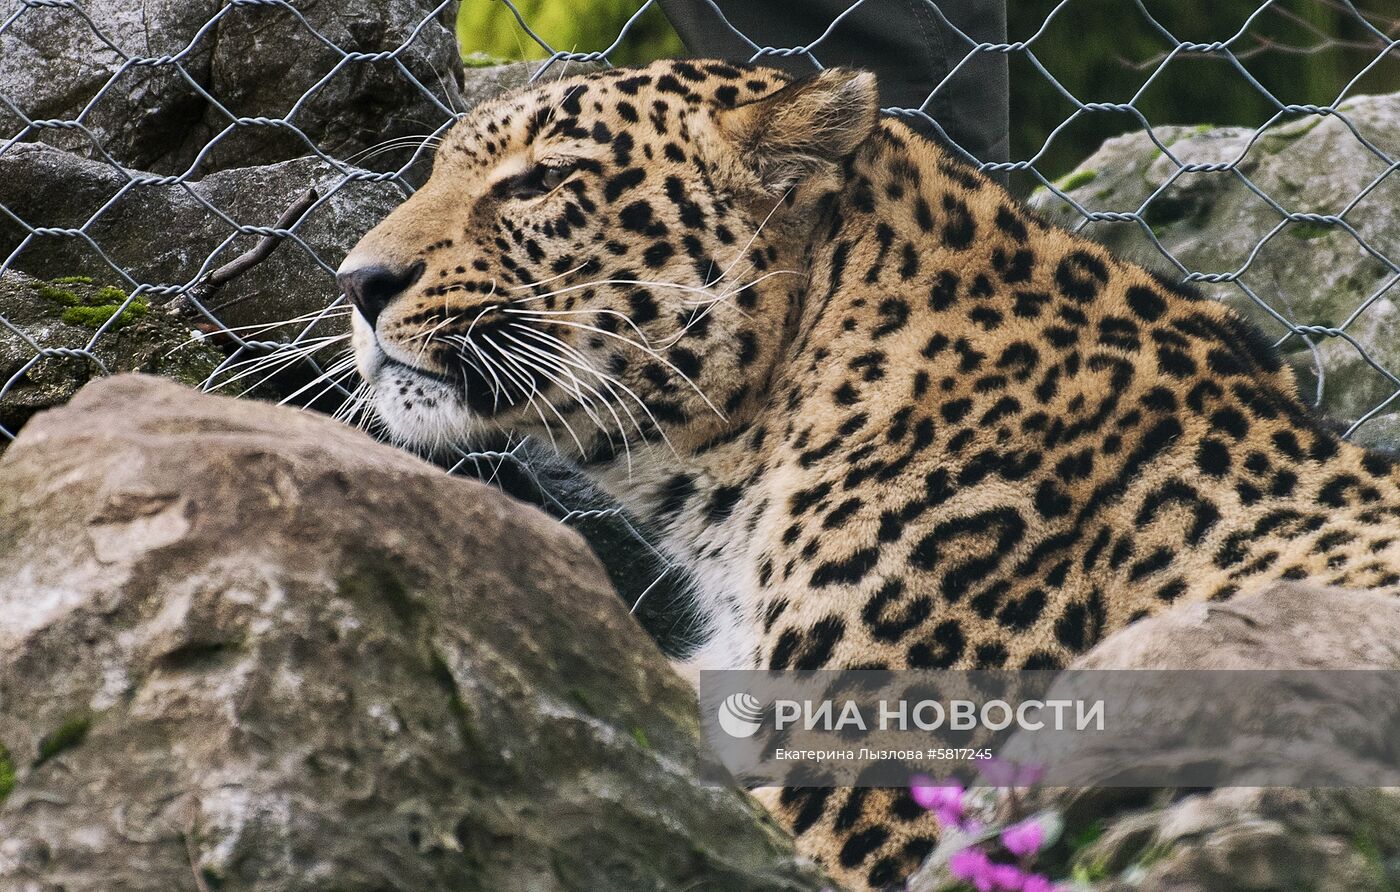 Центр восстановления леопардов в Сочи